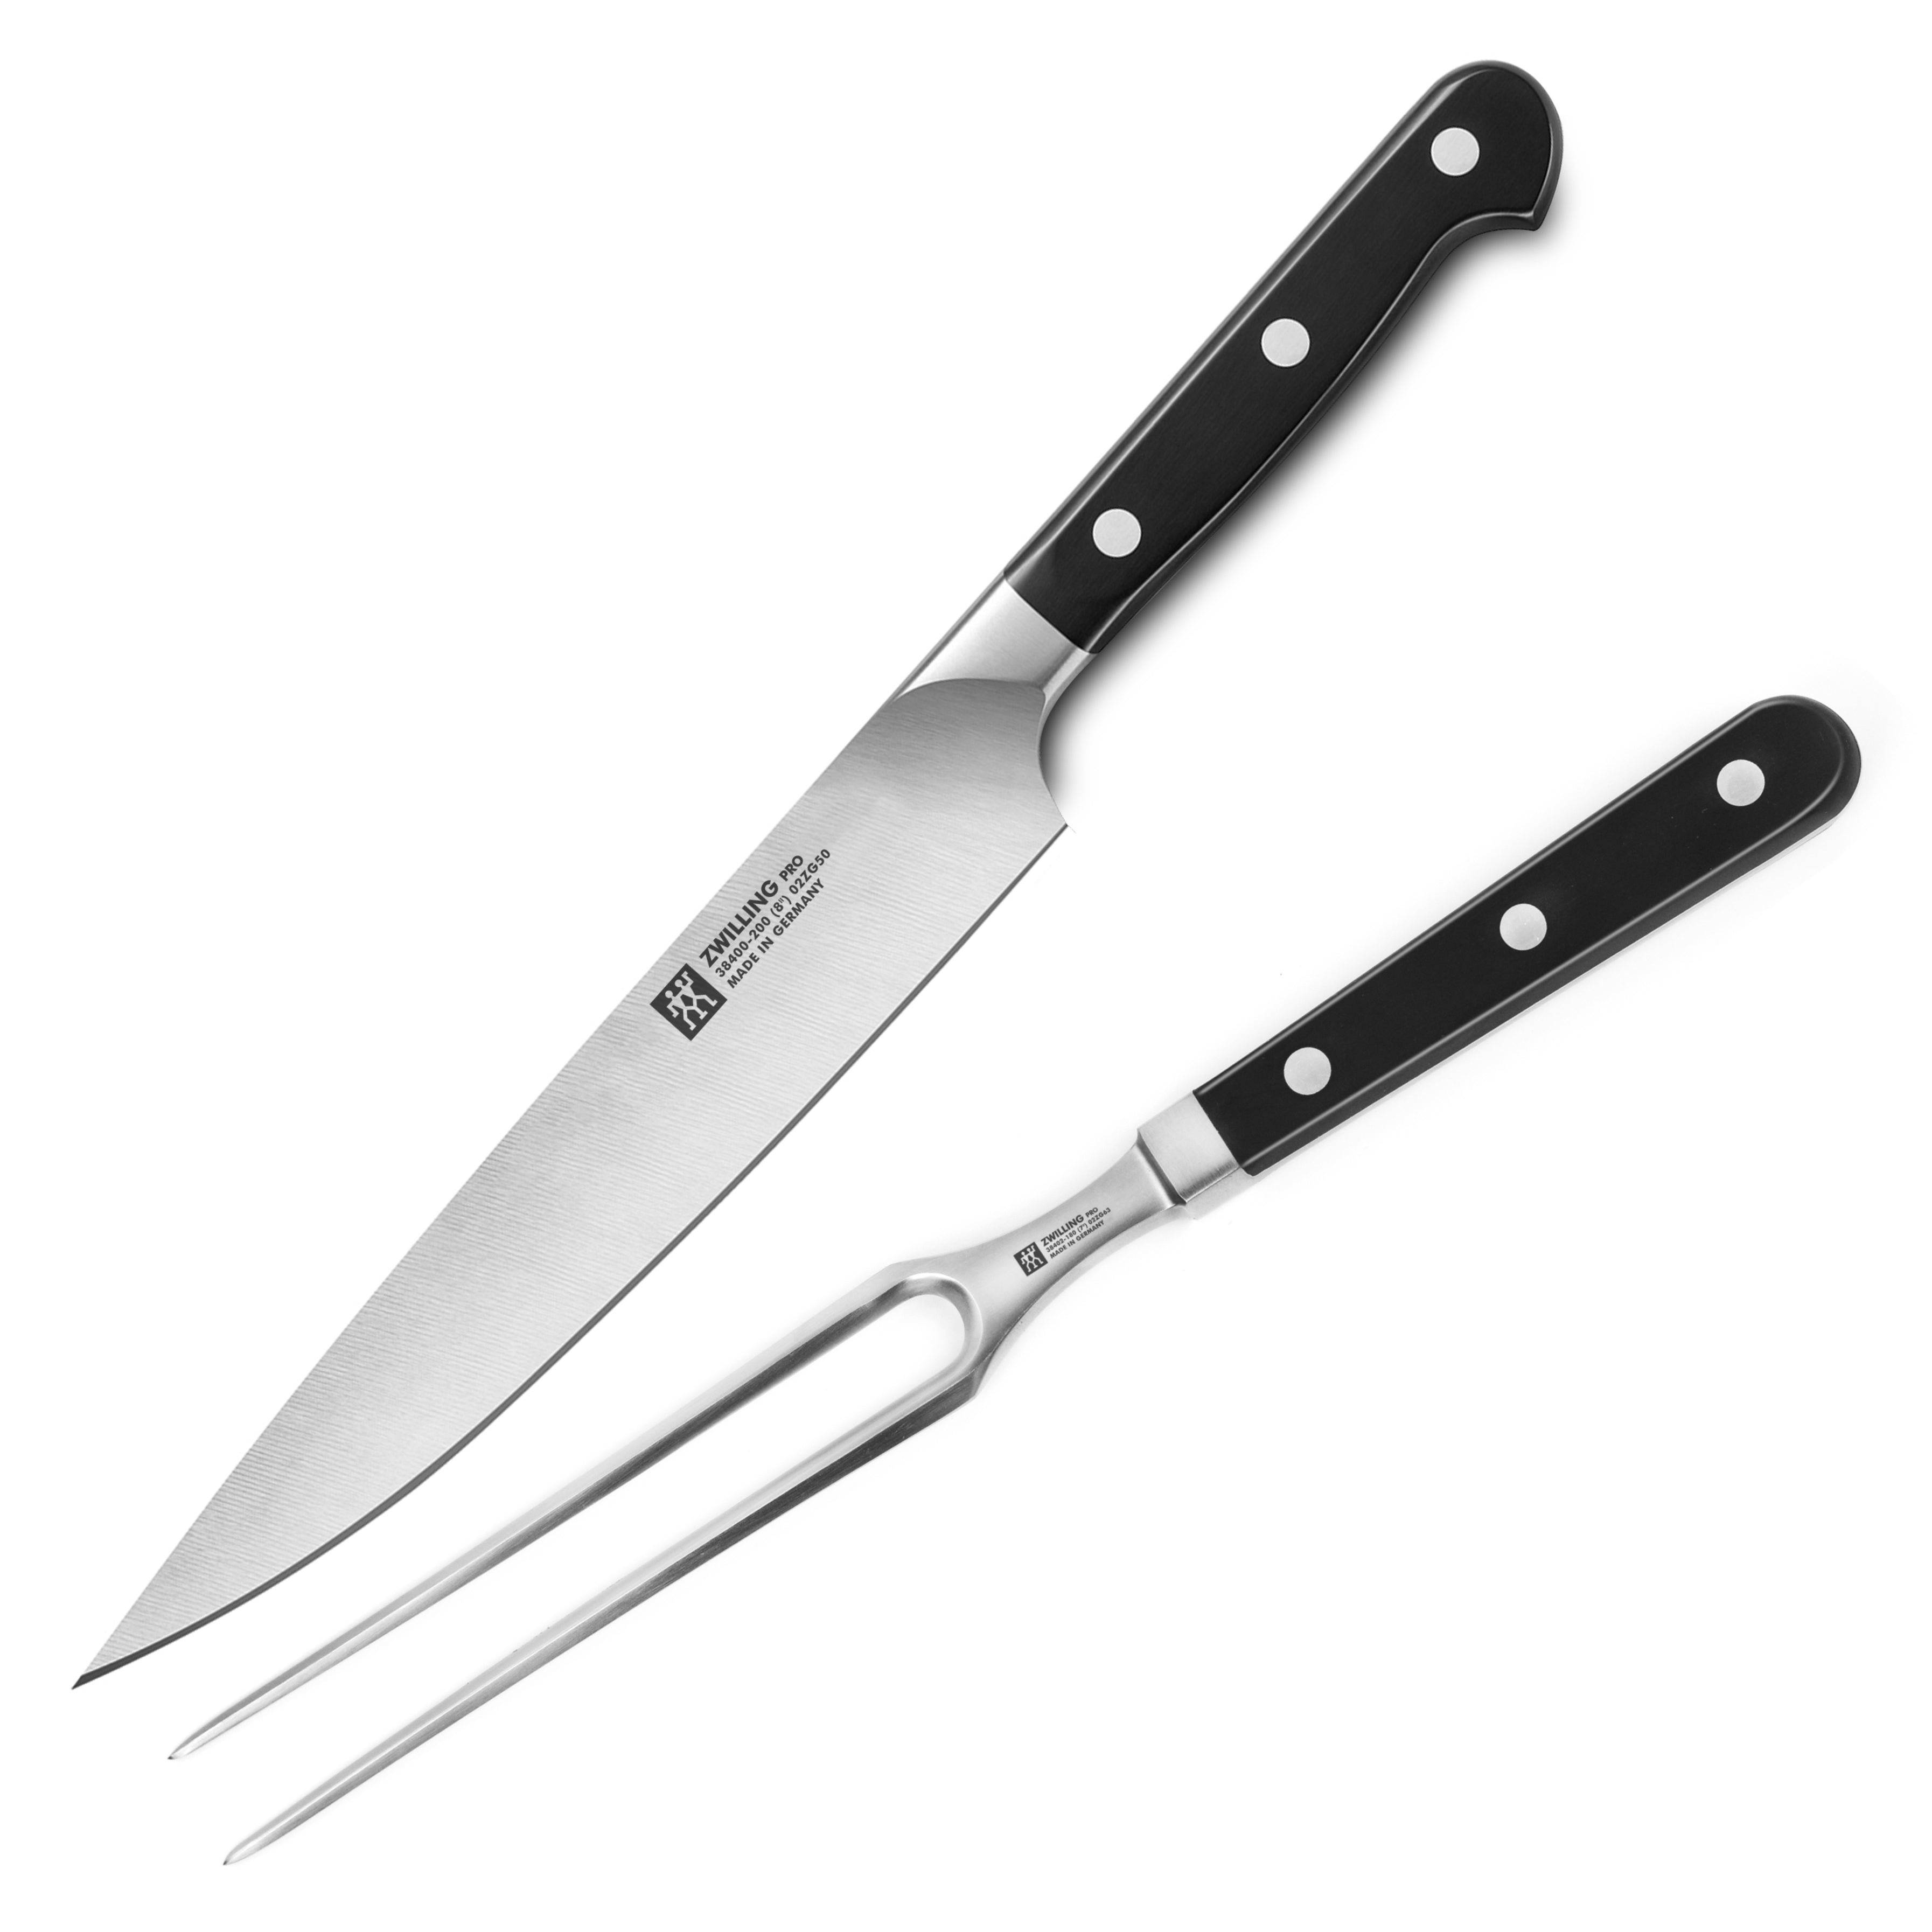 Carving Knives, Sets & Forks, Slicing Knives